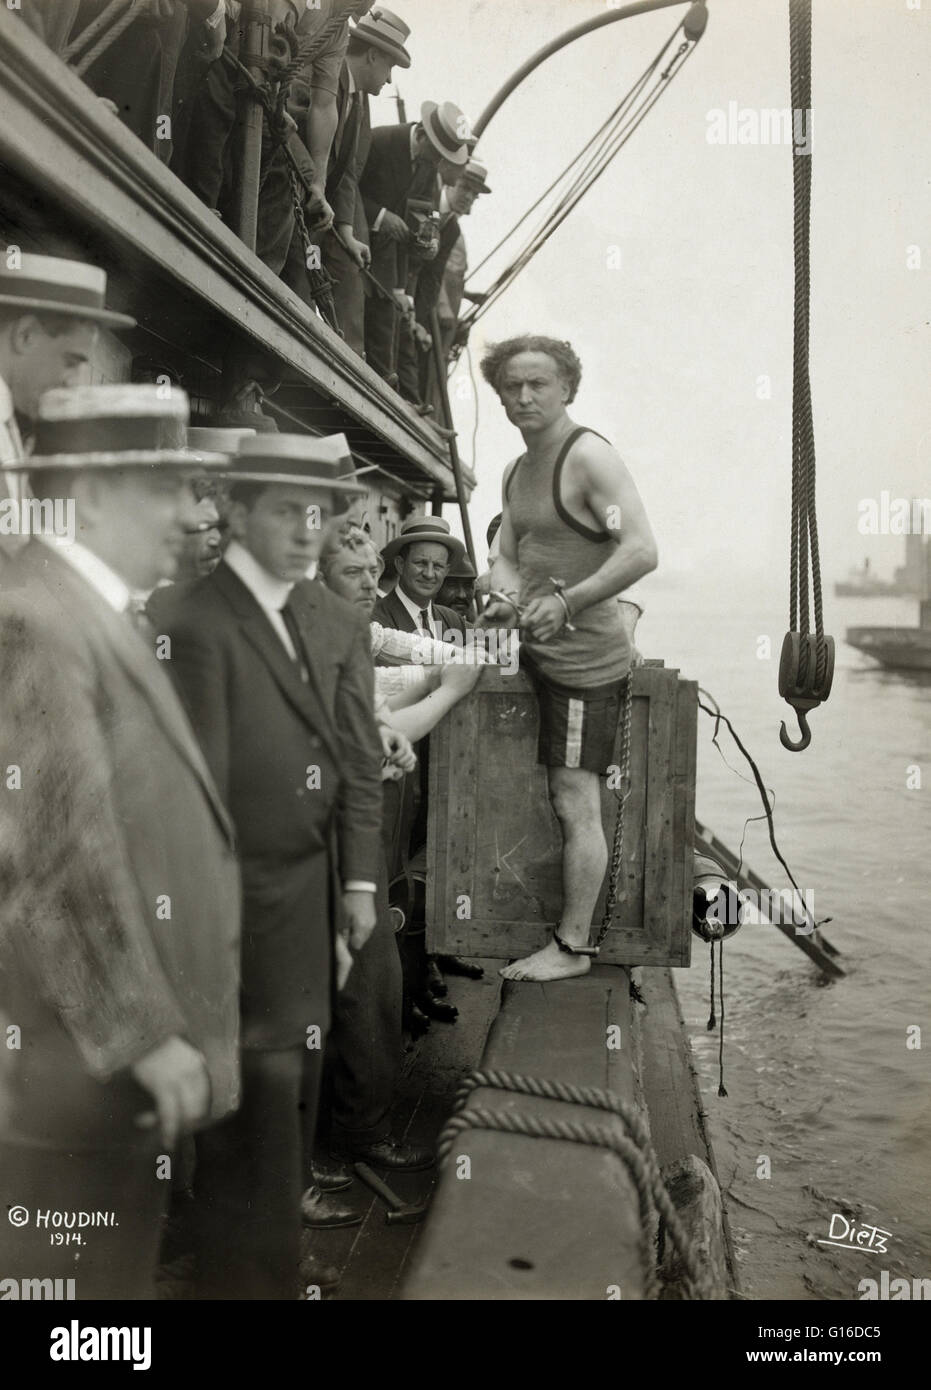 Intitulé : 'Harry Houdini entrer dans une caisse qui sera abaissé dans le port de New York dans le cadre d'une évasion stunt le 7 juillet 1912 montrant des hommes debout sur le côté d'une barge dans le port de New York comme Harry Houdini pas dans une caisse sur le bord de la b Banque D'Images